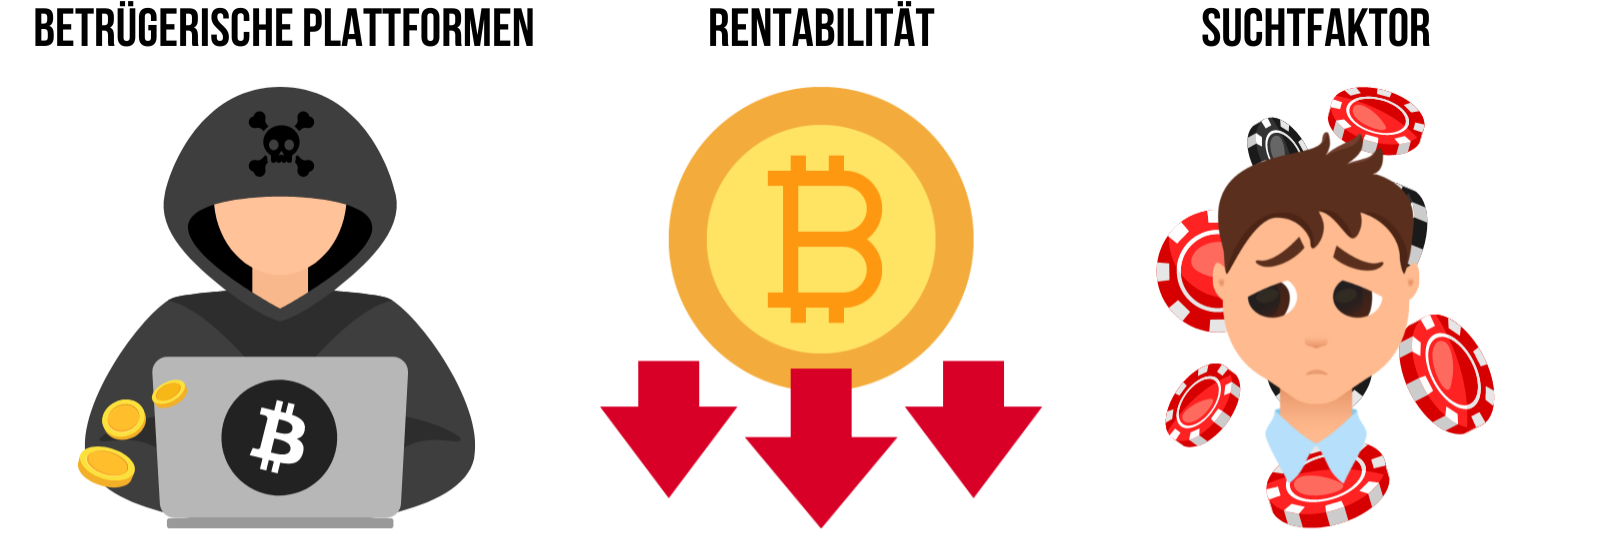 Kostenlose Bitcoins - Risiken